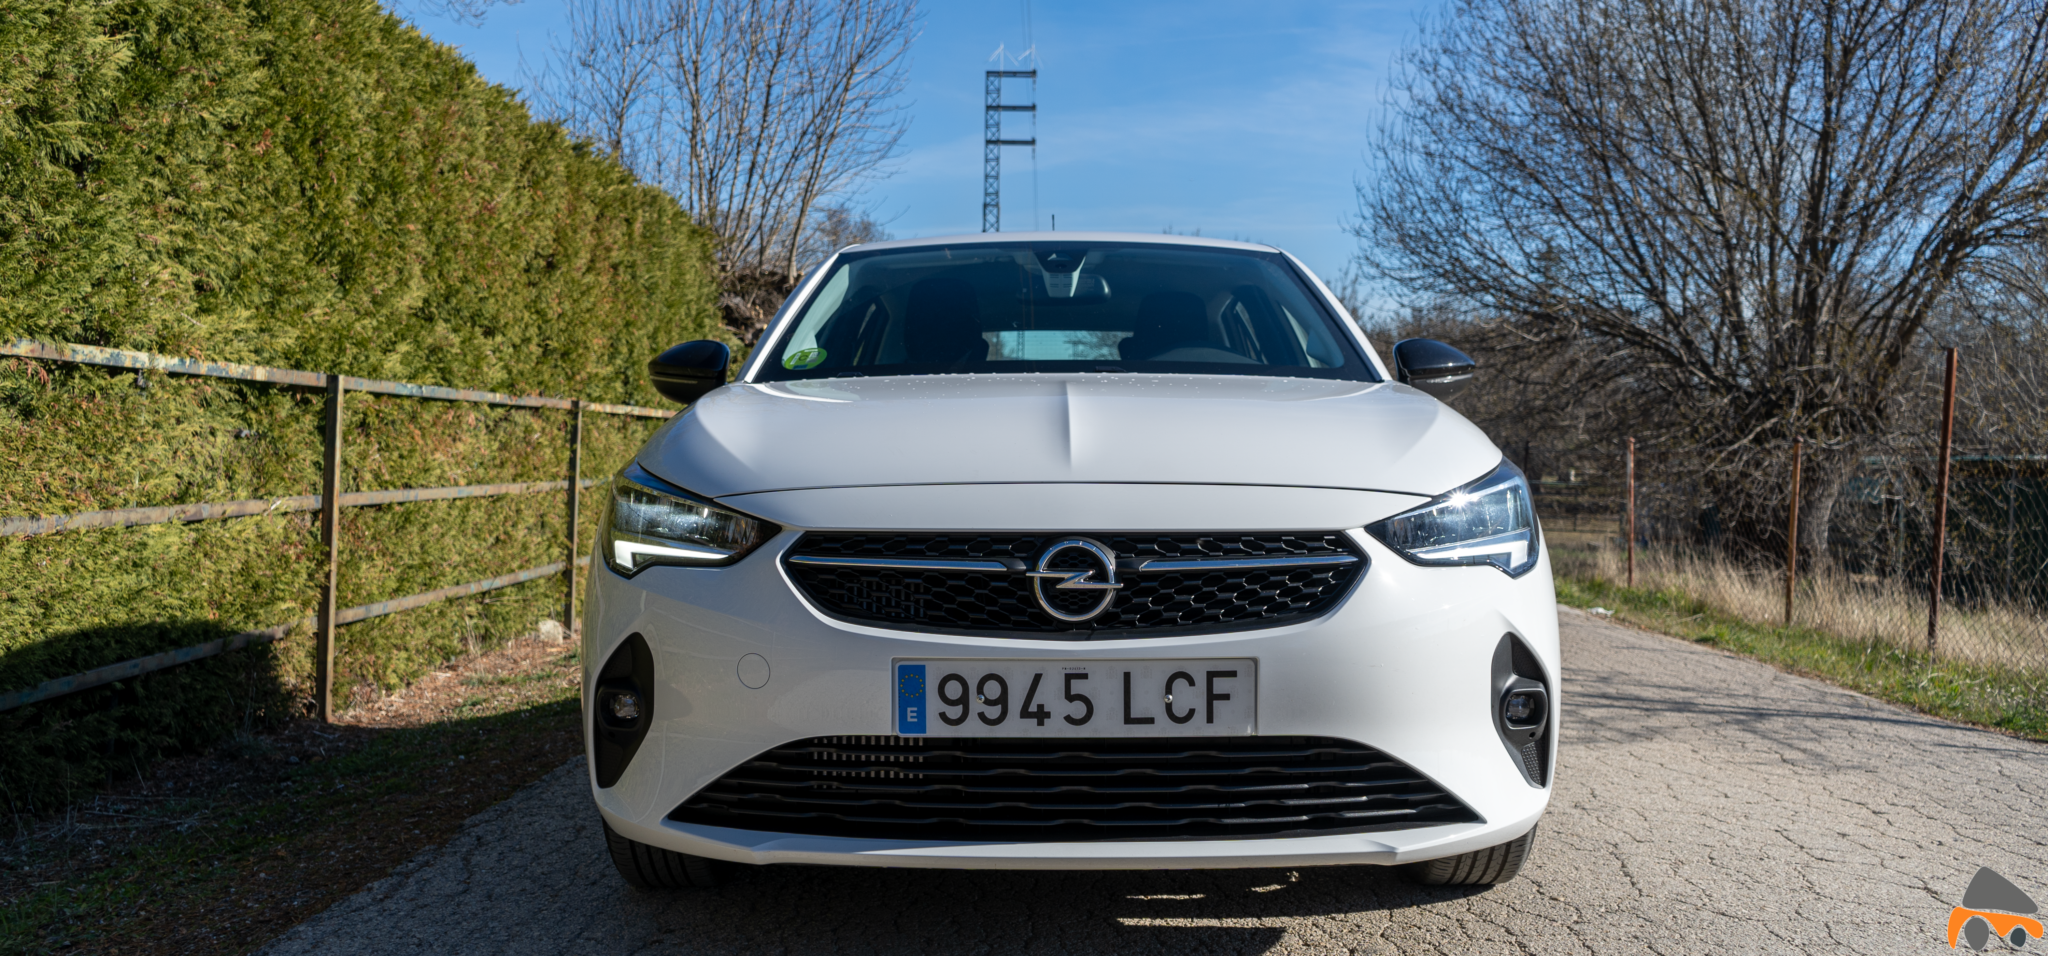 Frontal Opel Corsa Edition 2020 - Opel Corsa 2020: Un utilitario para tenerlo muy en cuenta